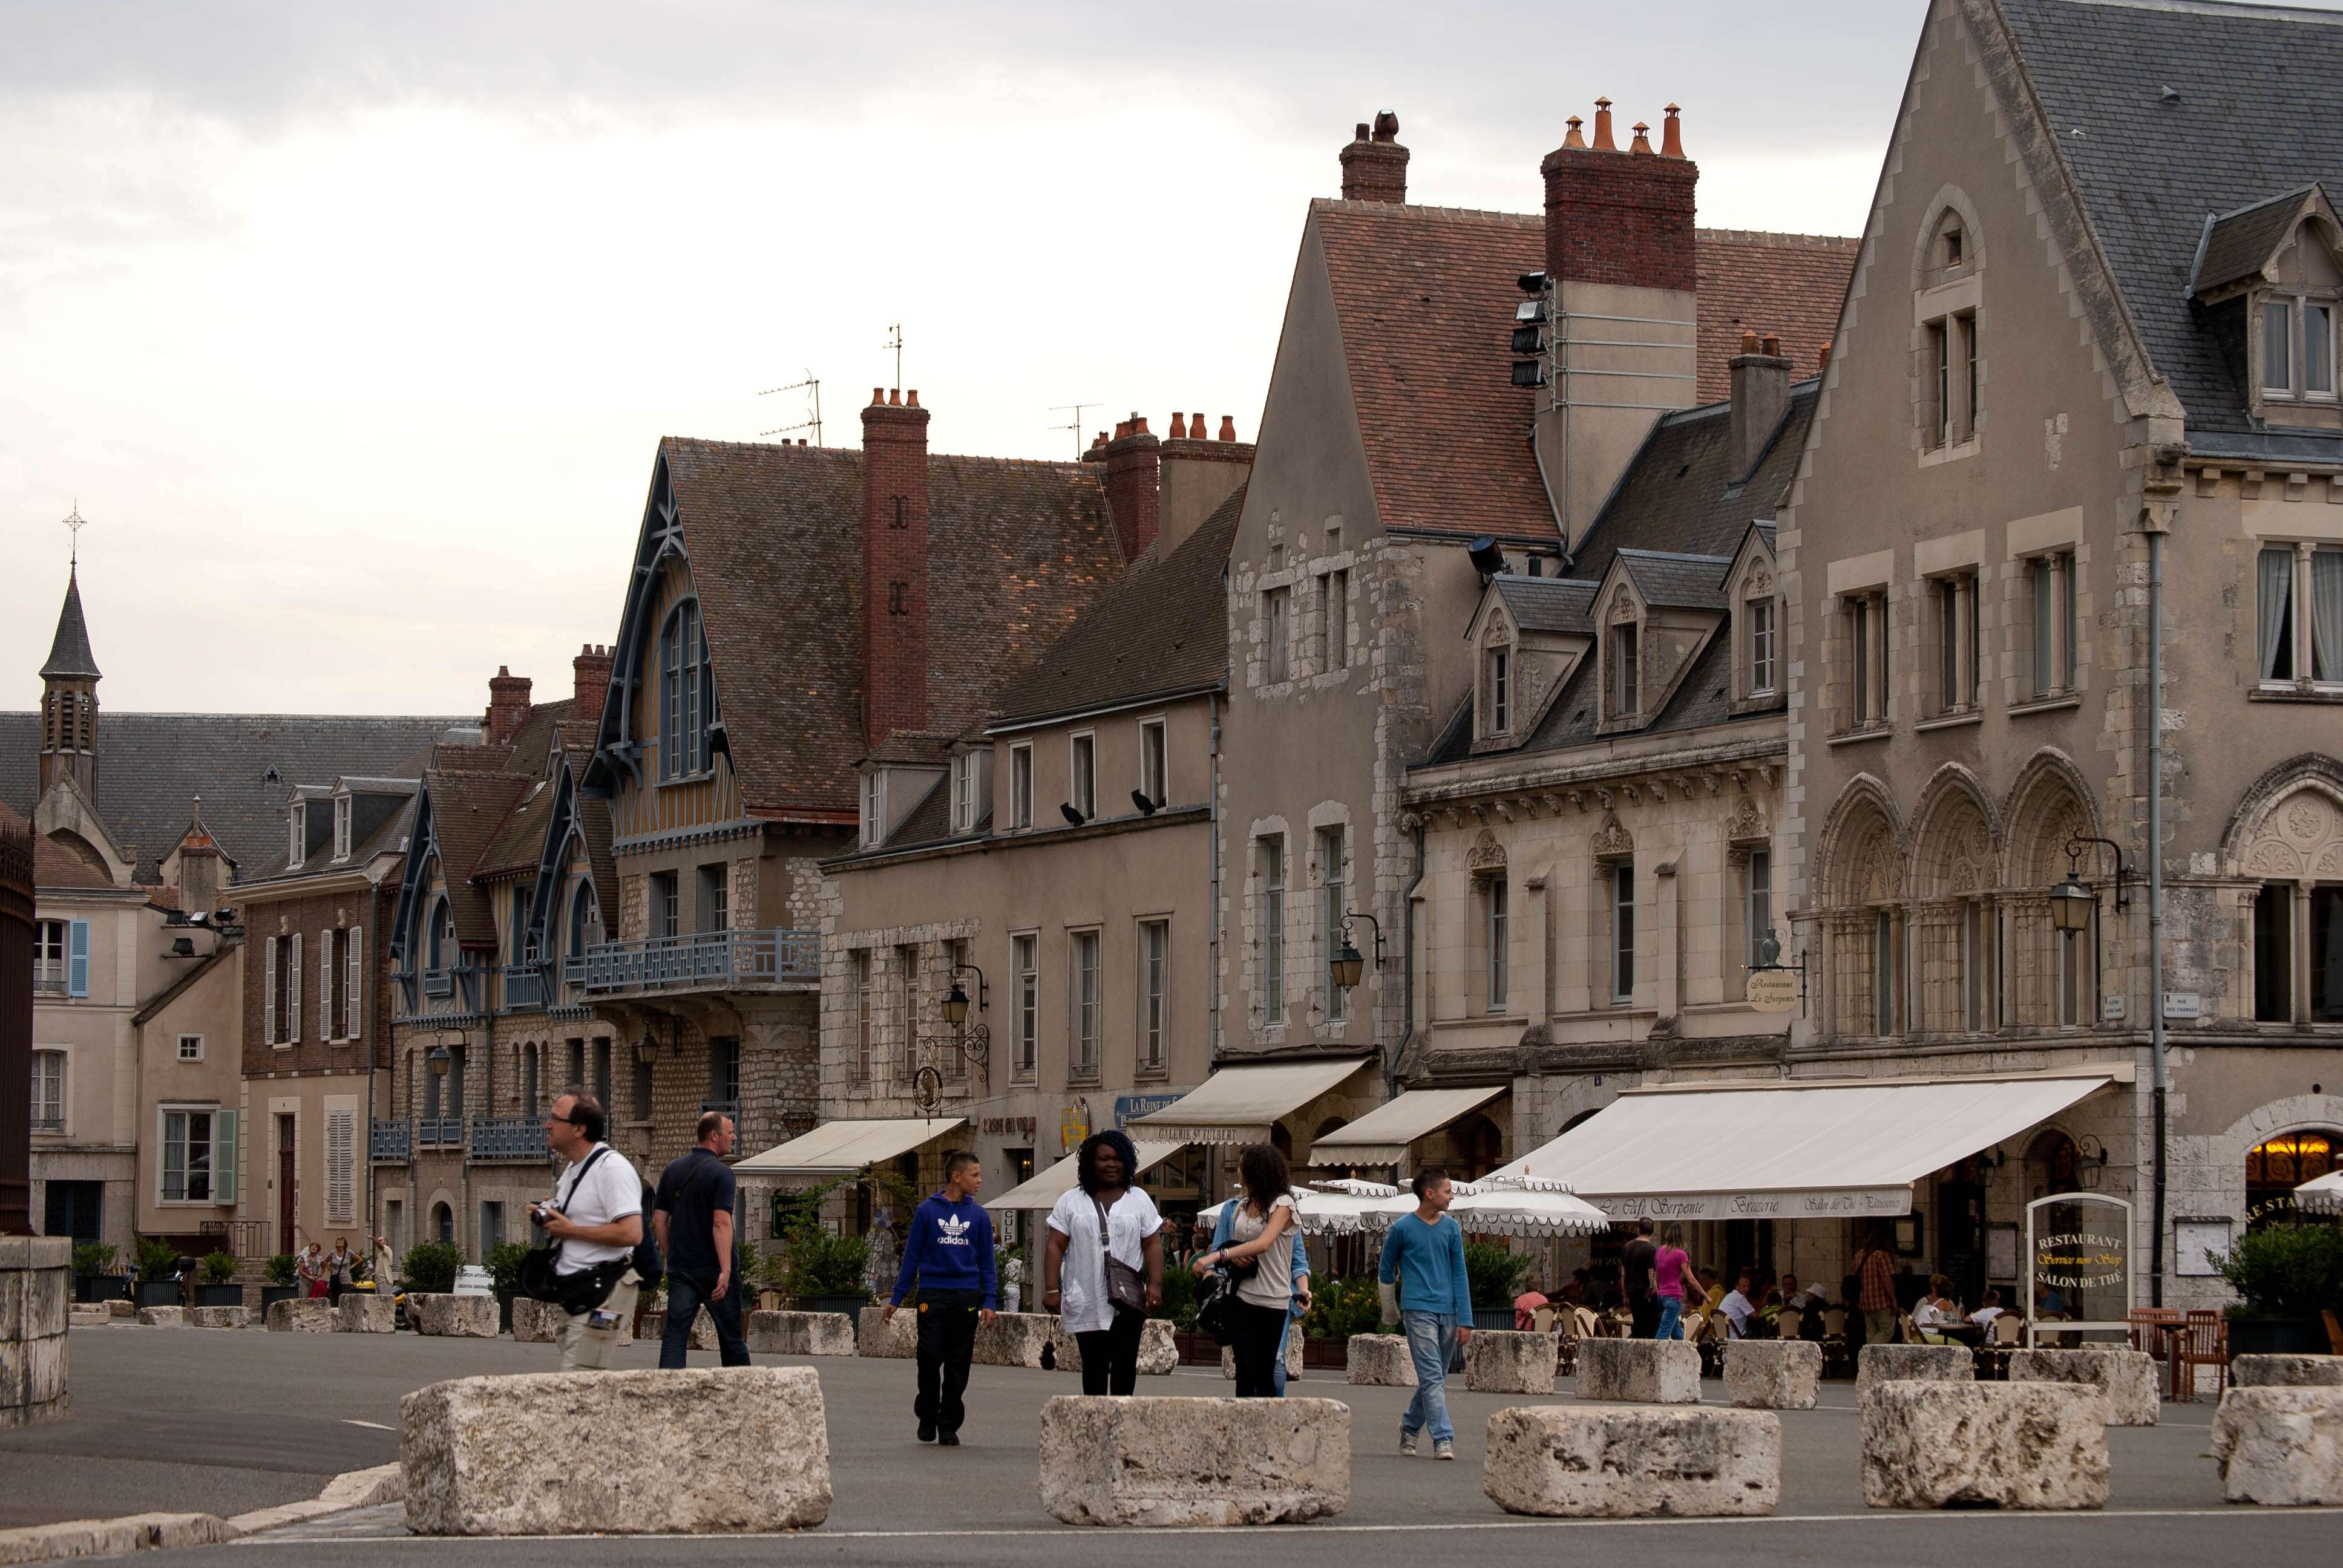 Chartres. Acceso, Alojamiento, Restaurantes y Actividades - Chartres: Arte, espiritualidad y esoterismo. (2)